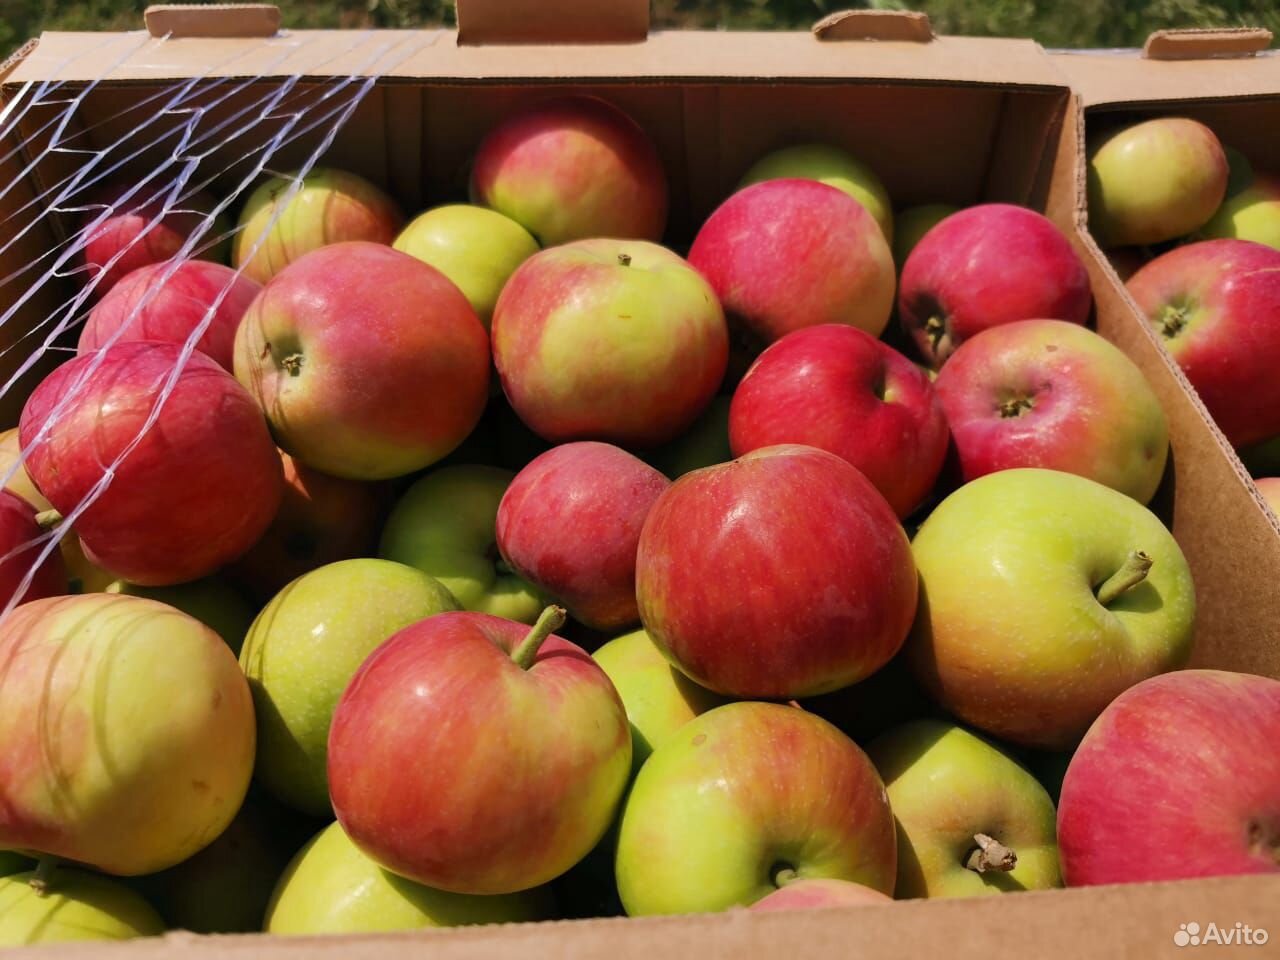 Купить яблоки в воронеже. Авито ру яблоки в Крыму или в Краснодаре. Продажа яблоки в КБР авито. Авито яблоки купить в Кабардино.